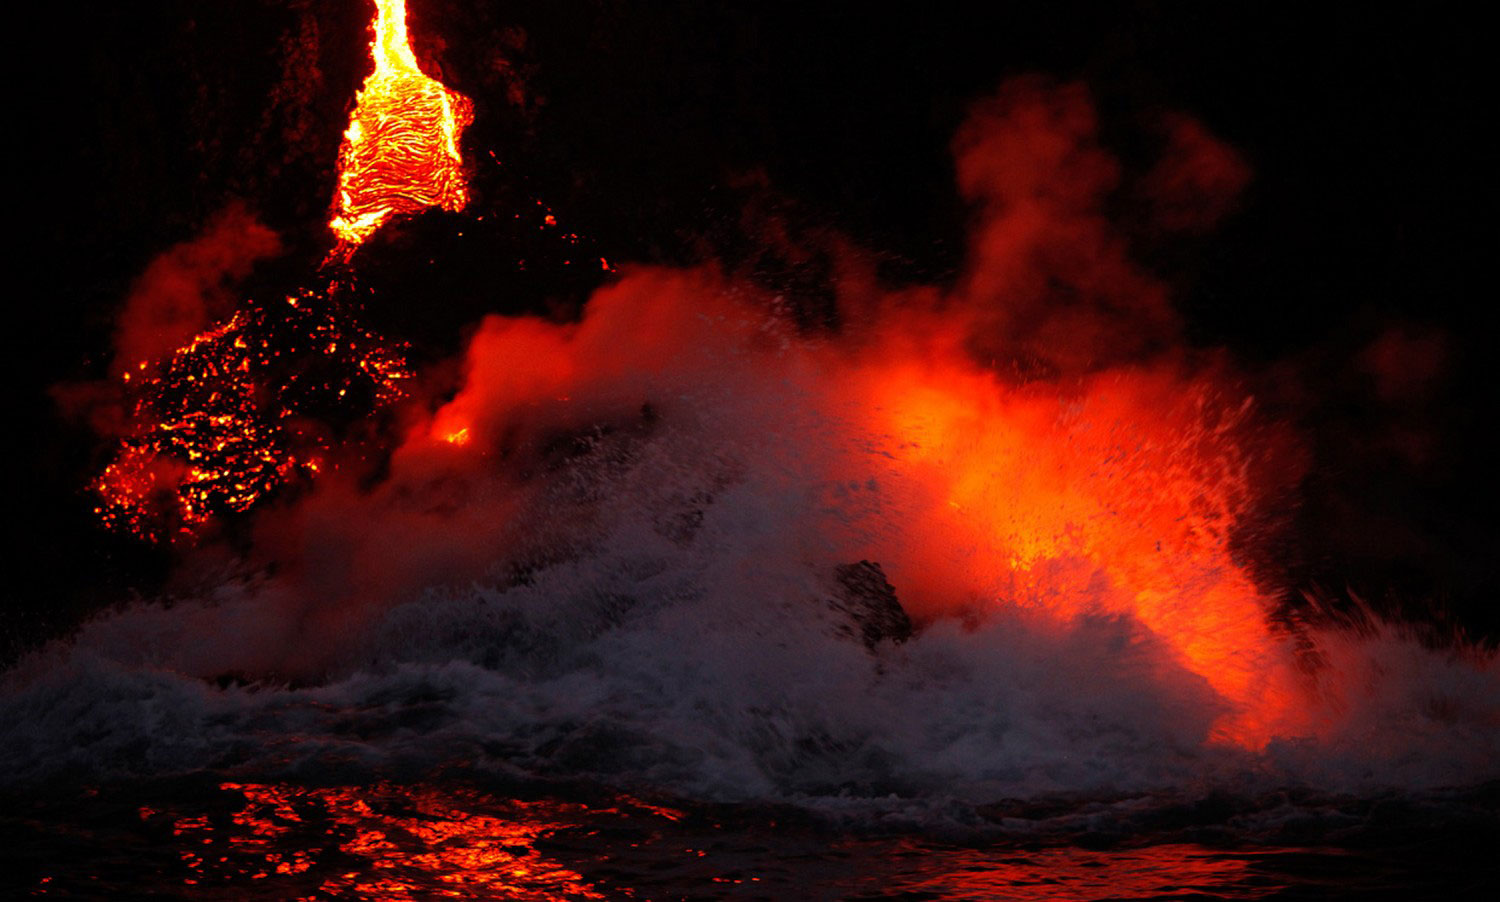 пар от вулкана над океаном, фото